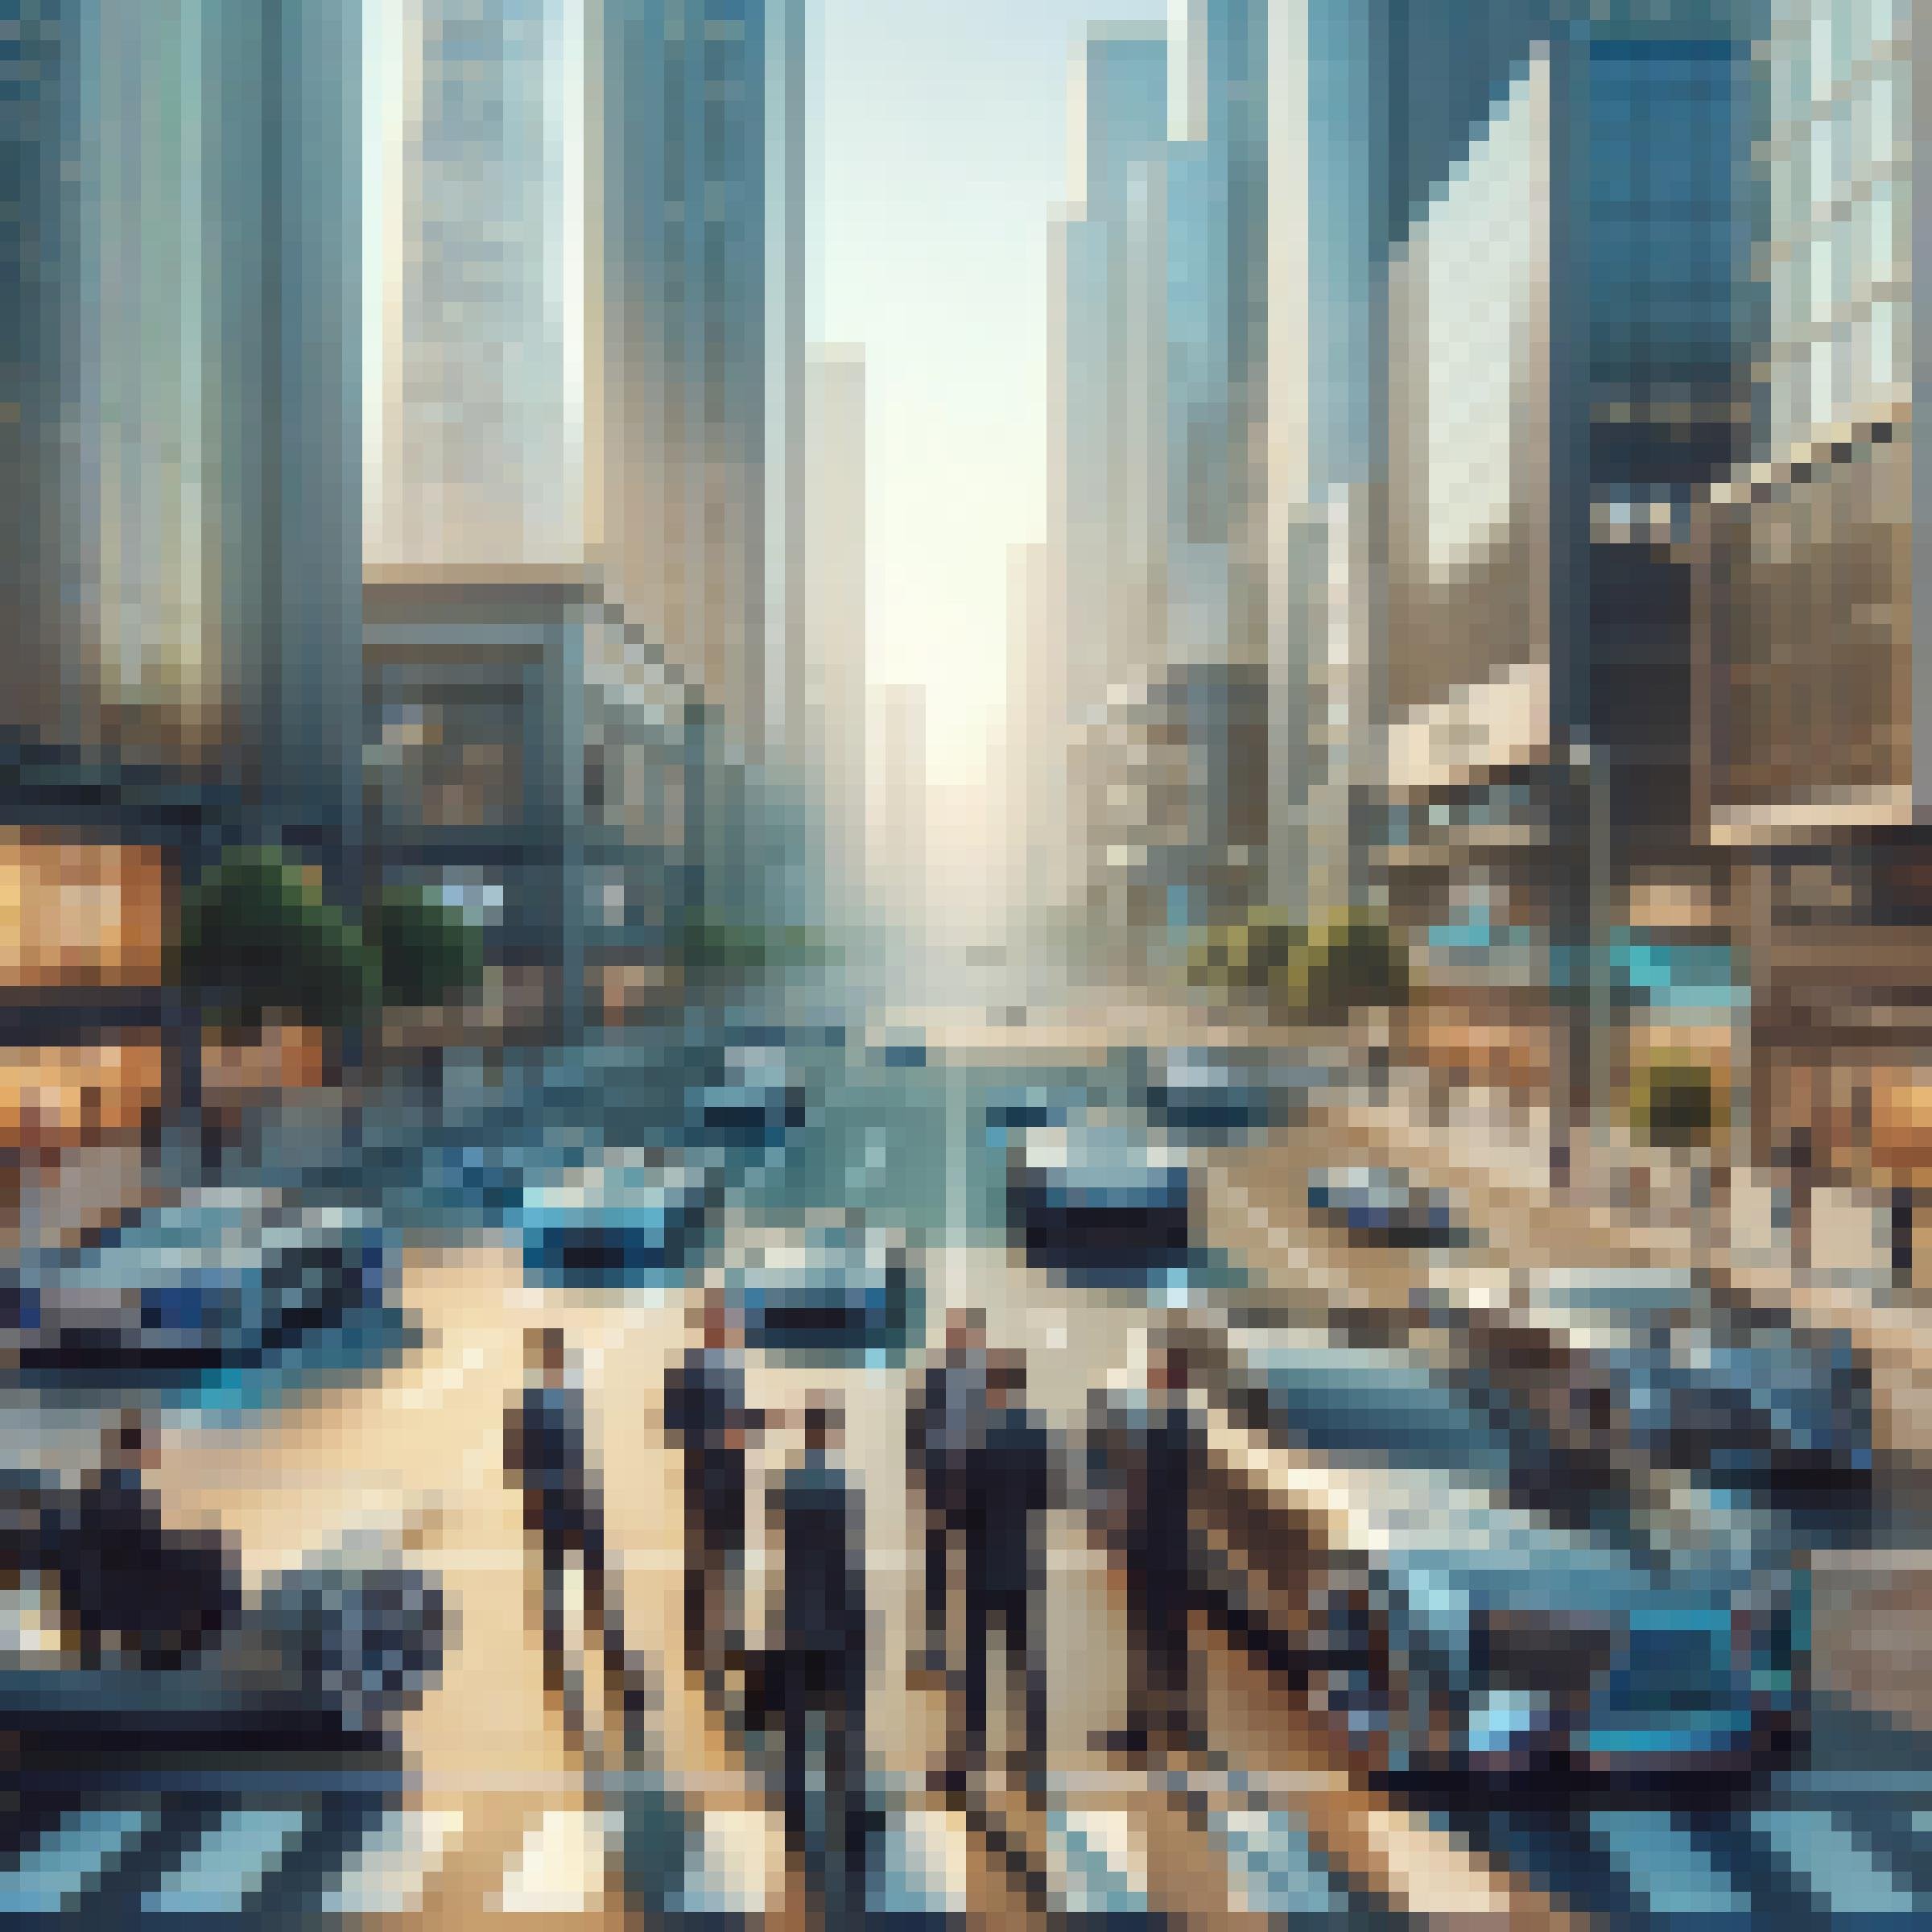 Man sieht eine Gruppe von Männern in Anzügen auf einer Straße stehen und diskutieren. Im Hintergrund sind moderne Hochhäuser zu sehen, einige Bäume am Straßenrand und futuristische Autos auf der Straße.